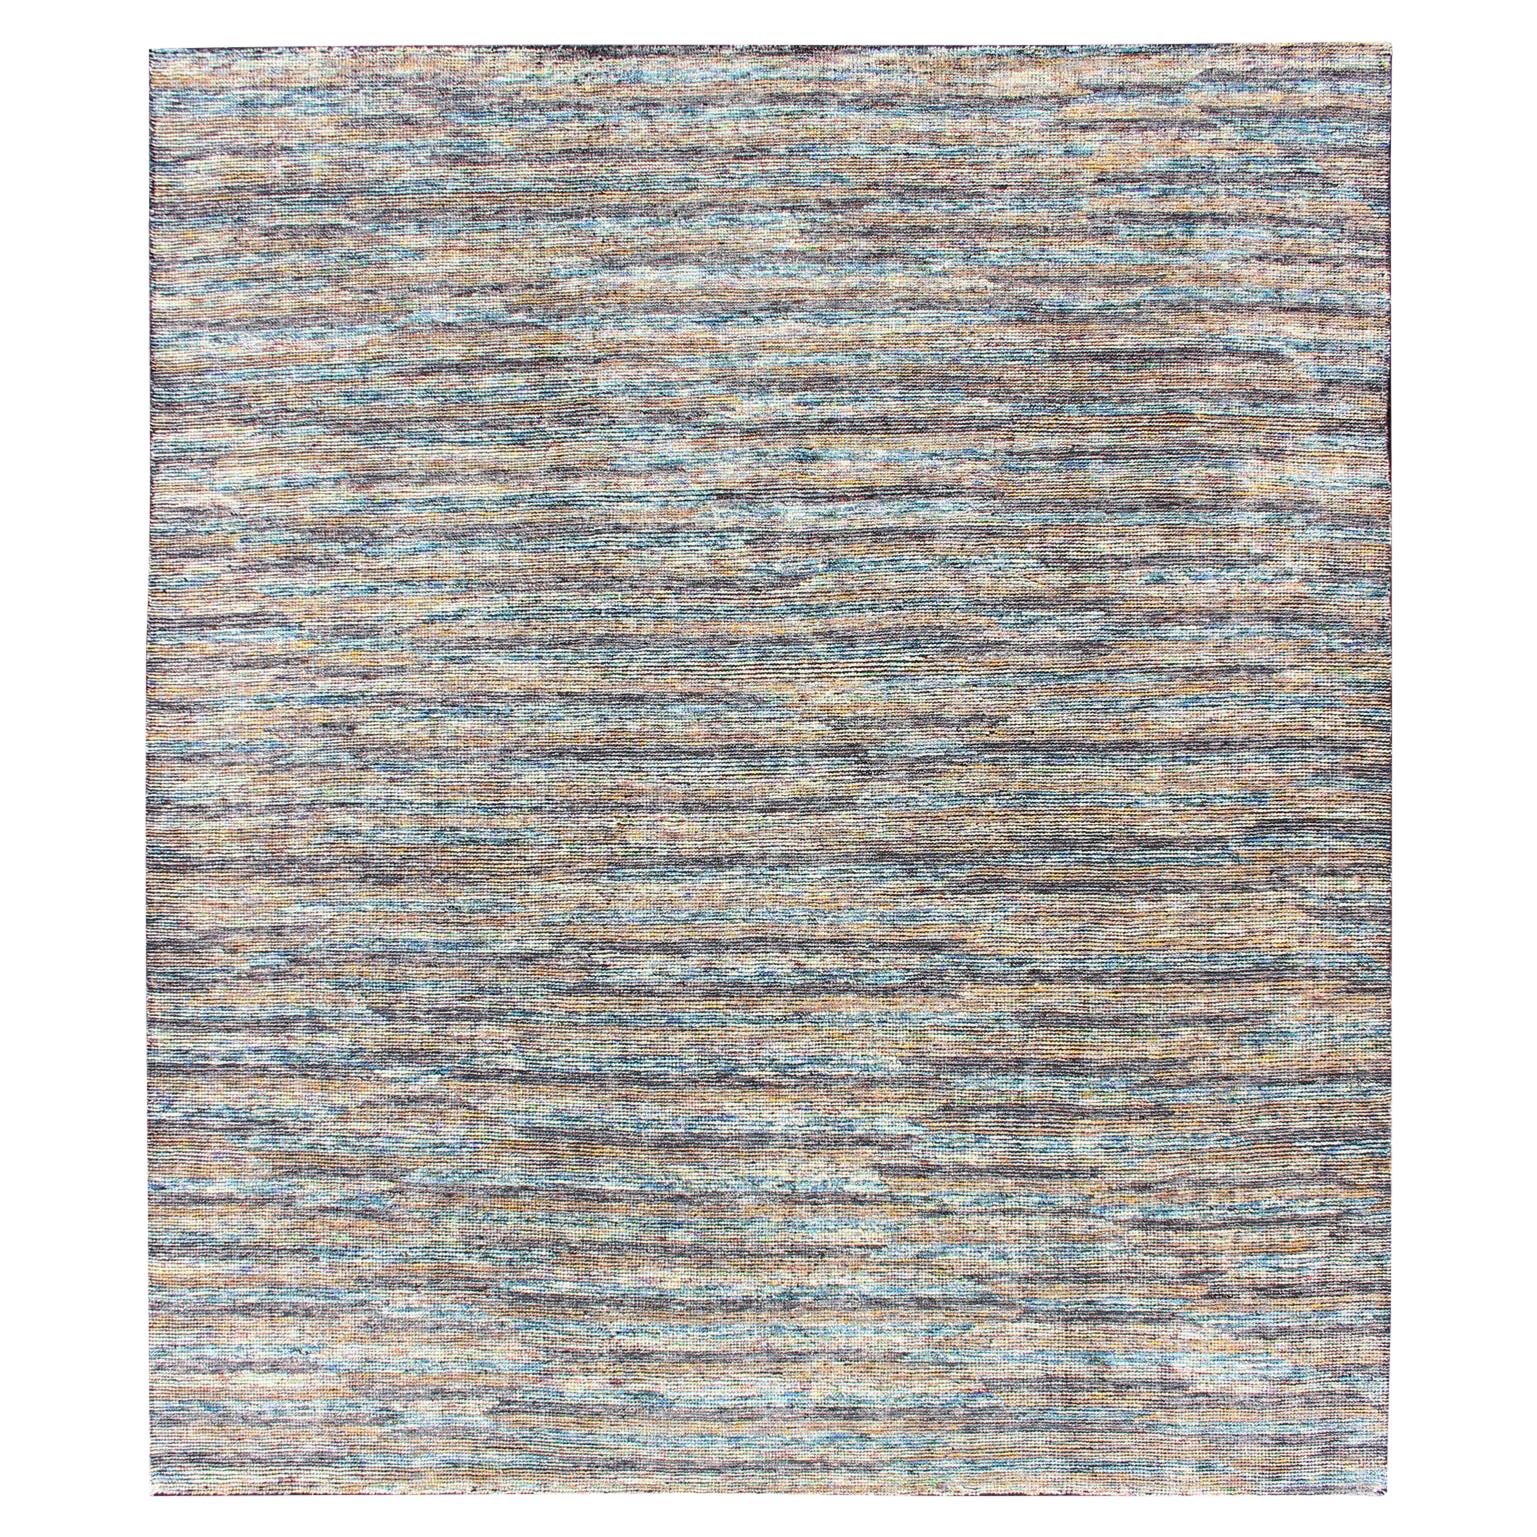 Schöner moderner Teppich im Used-Stil in verschiedenen Grau-, Lila-, Blau- und Gelbtönen